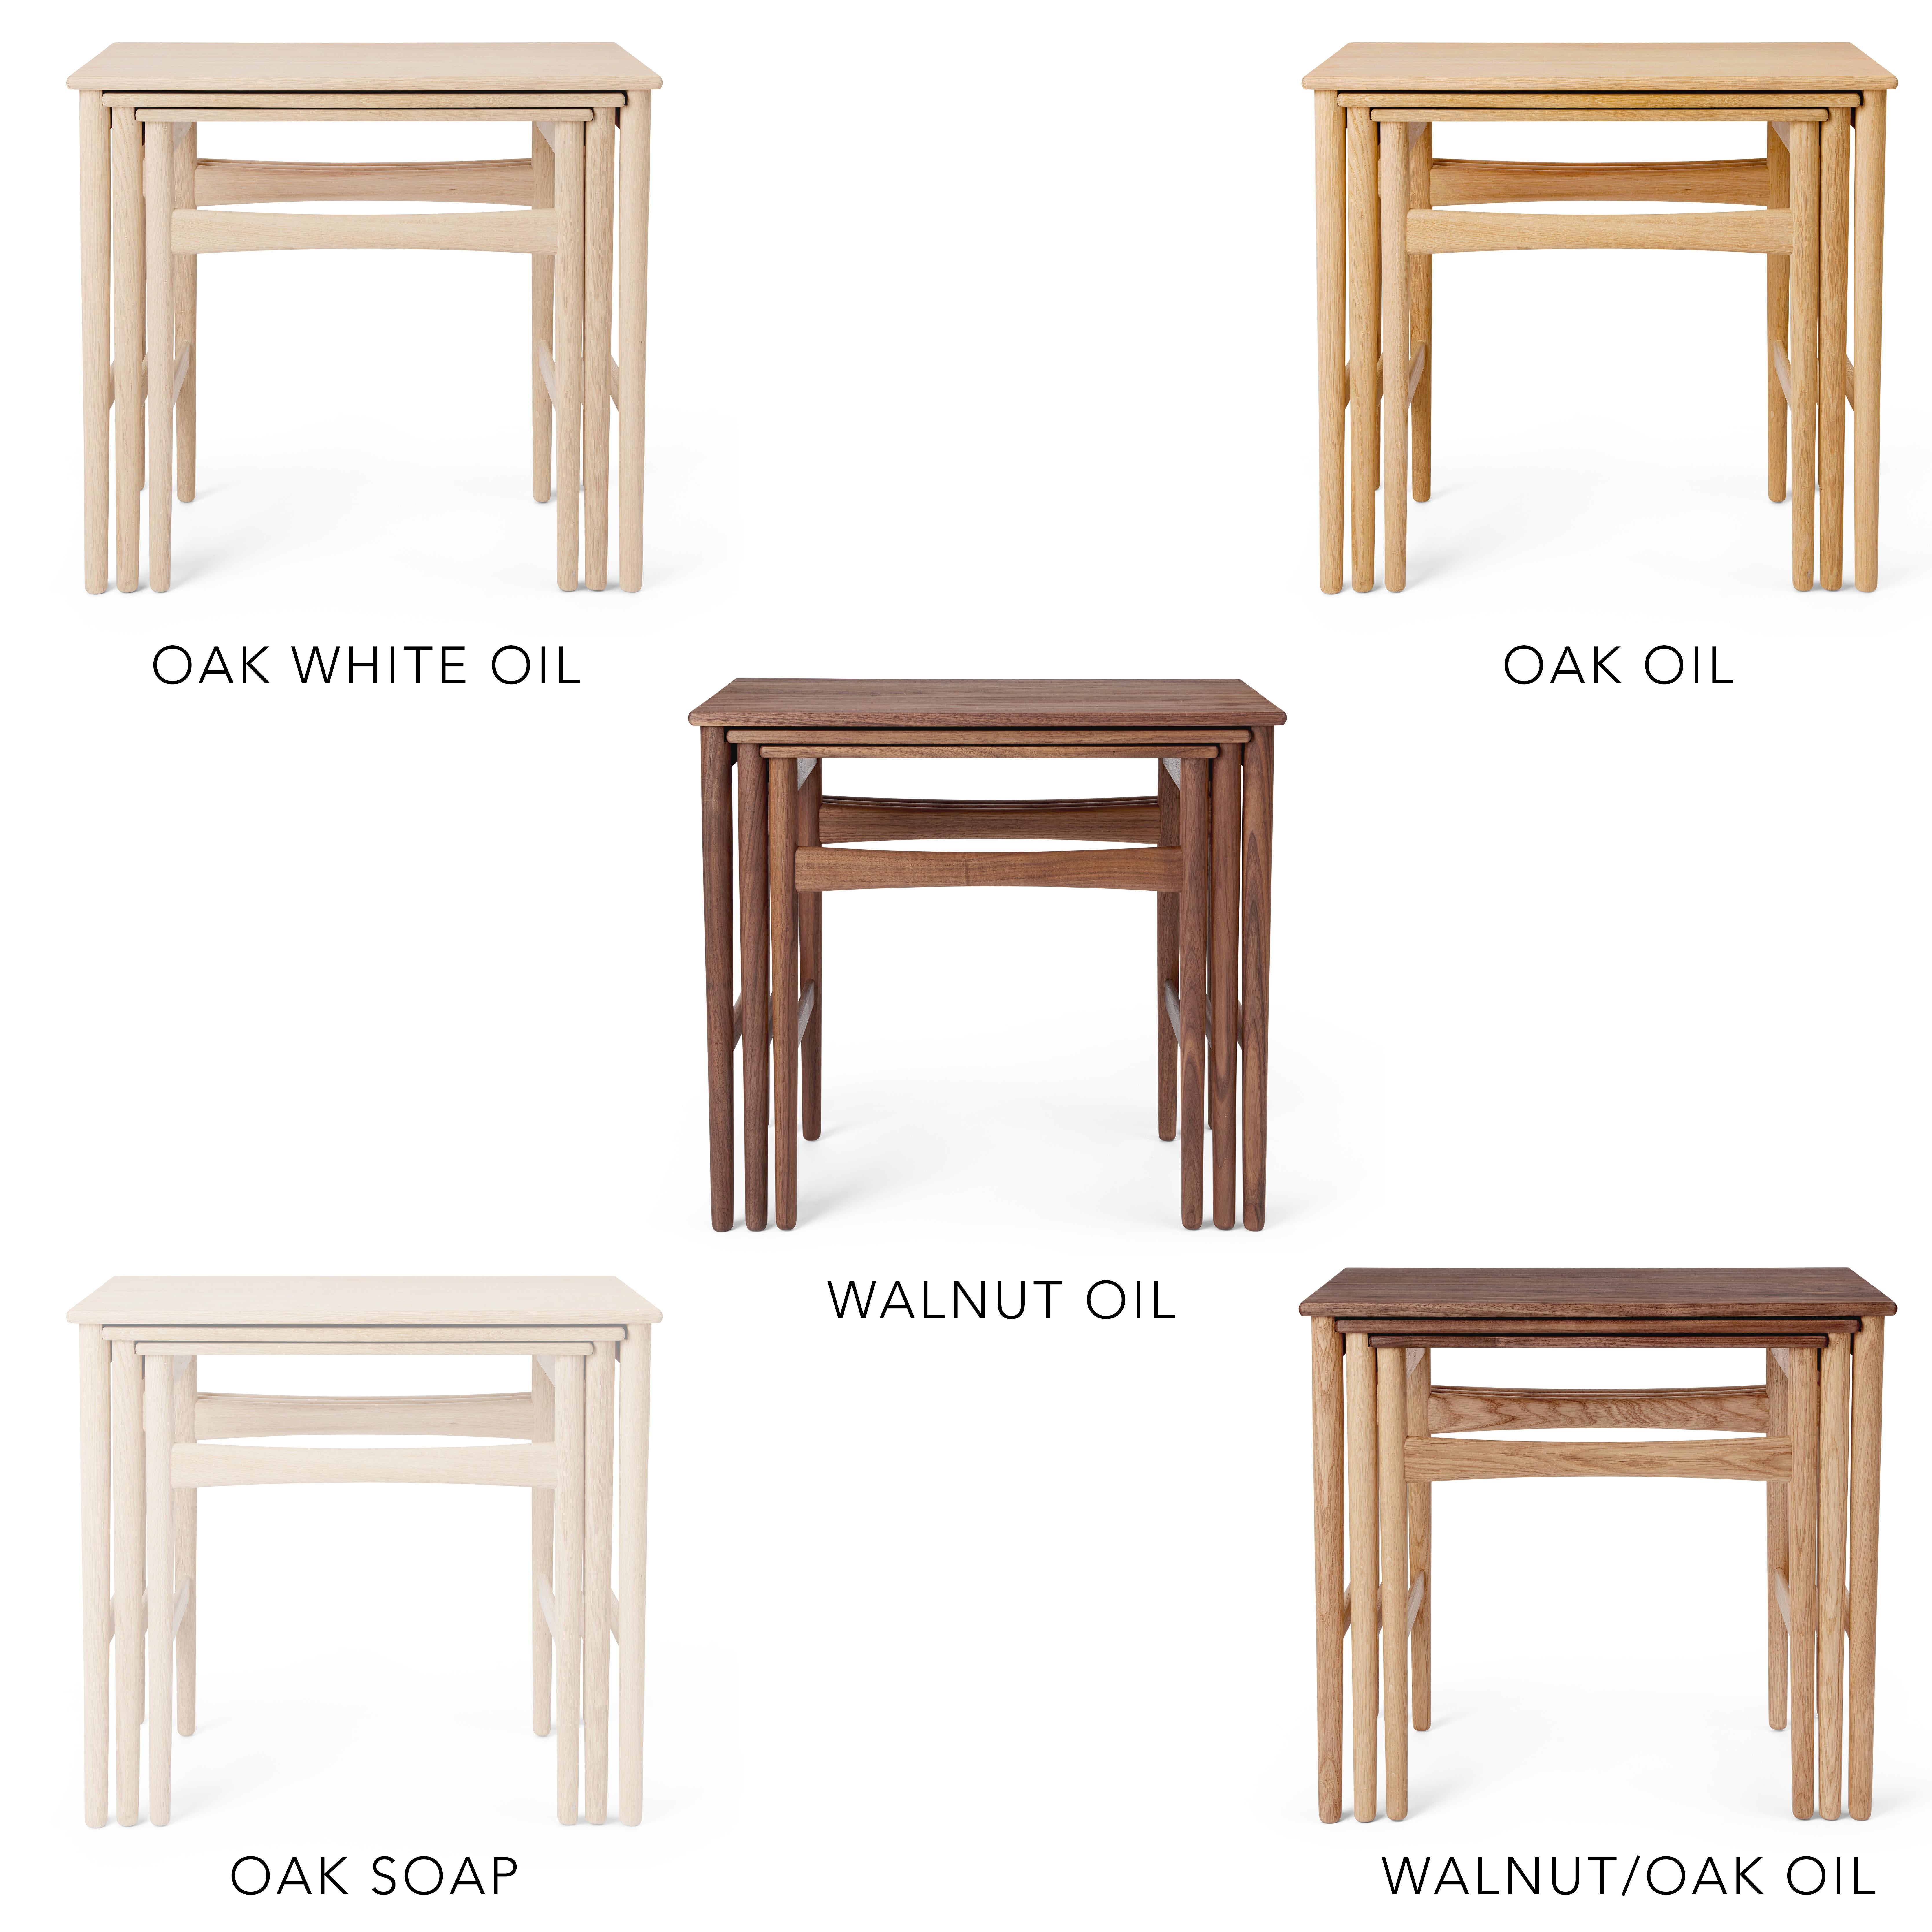 Hans J. Wegner 'CH004' Nesting Tables in Oak White Oil for Carl Hansen & Son For Sale 3